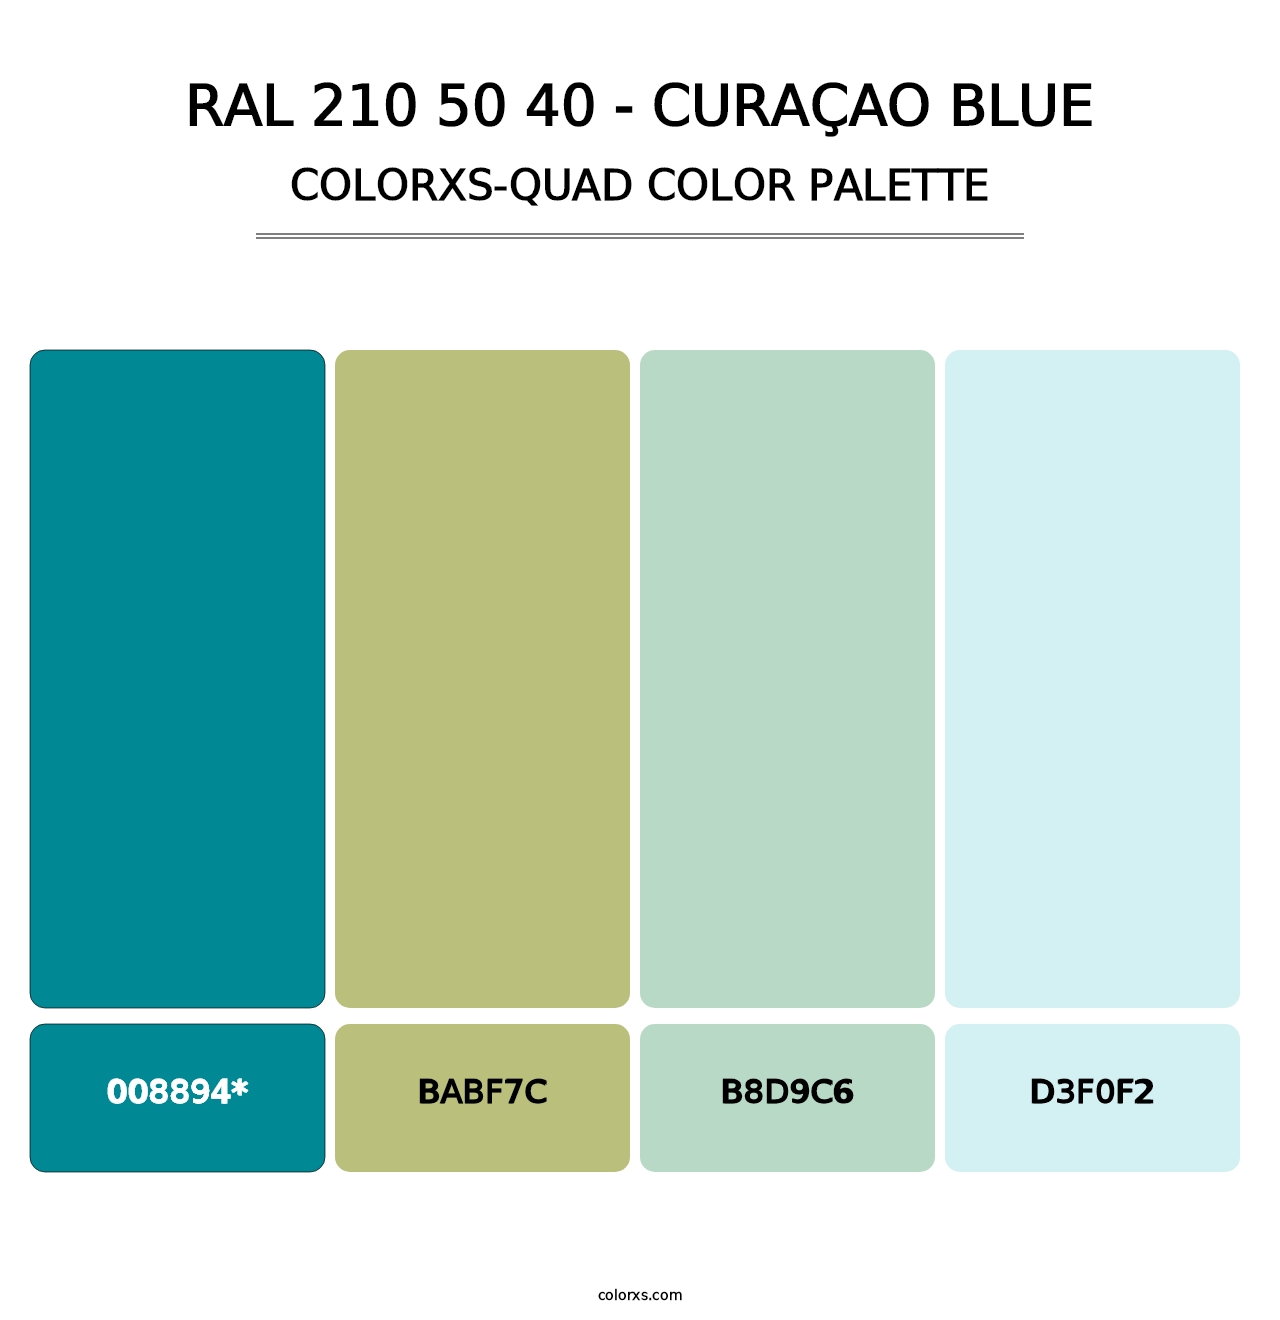 RAL 210 50 40 - Curaçao Blue - Colorxs Quad Palette